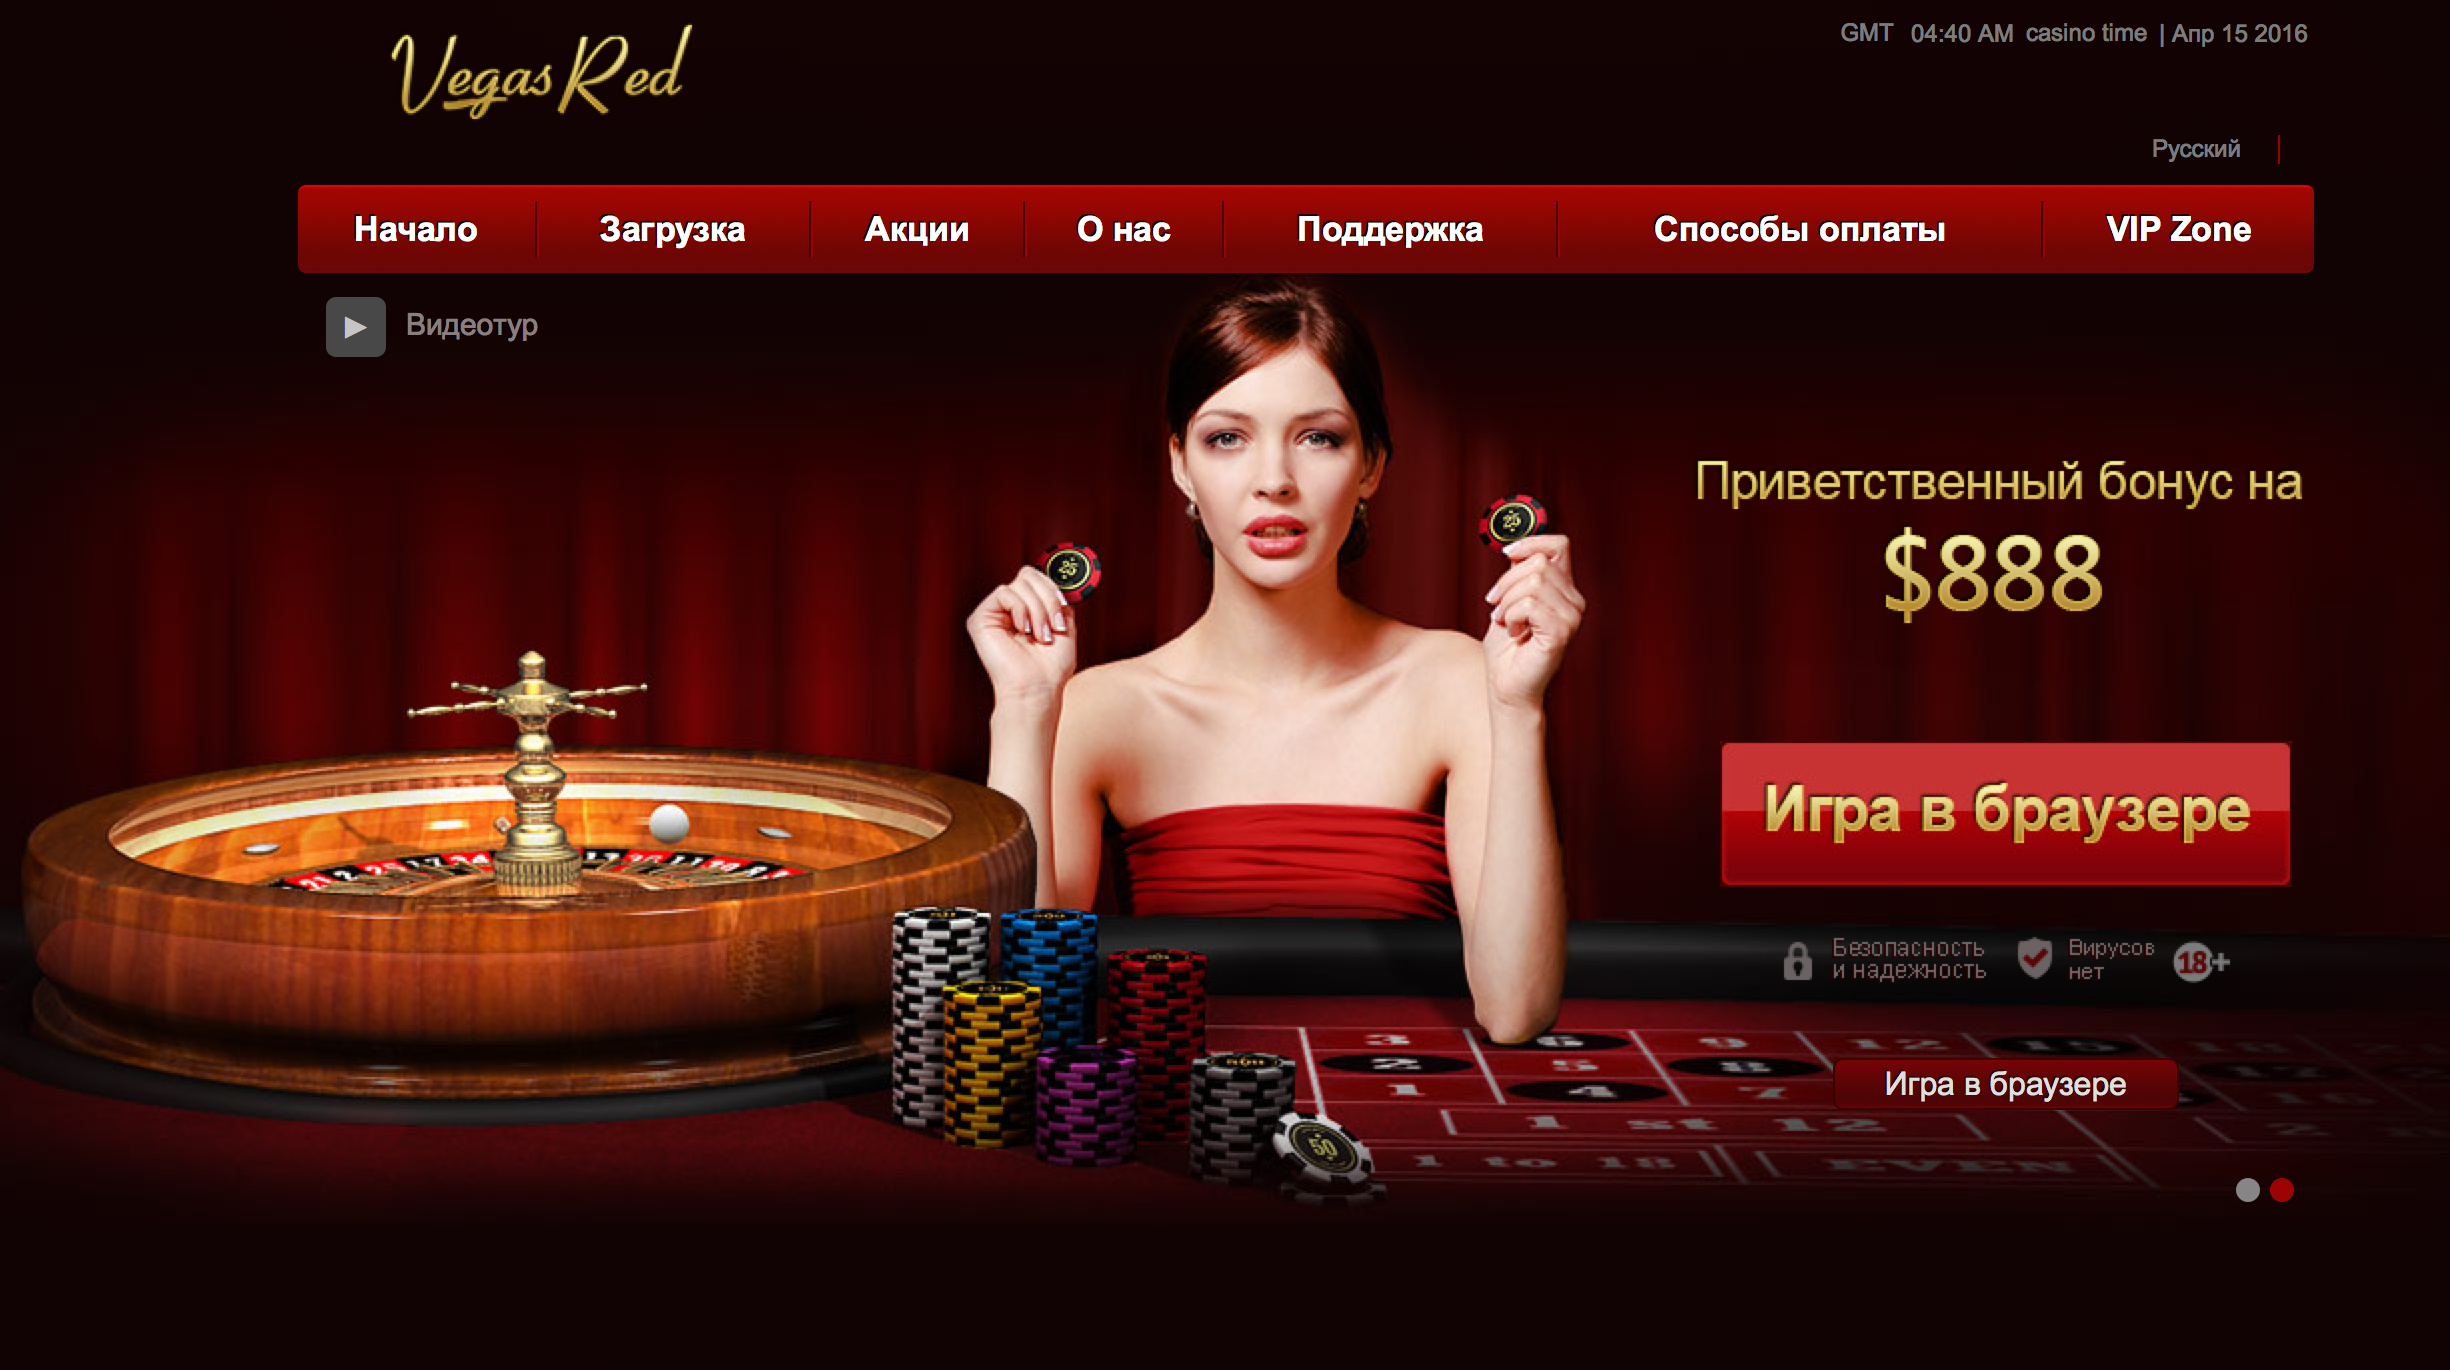 Как рекламируют казино приватные сайты с девушками онлайн рулетка